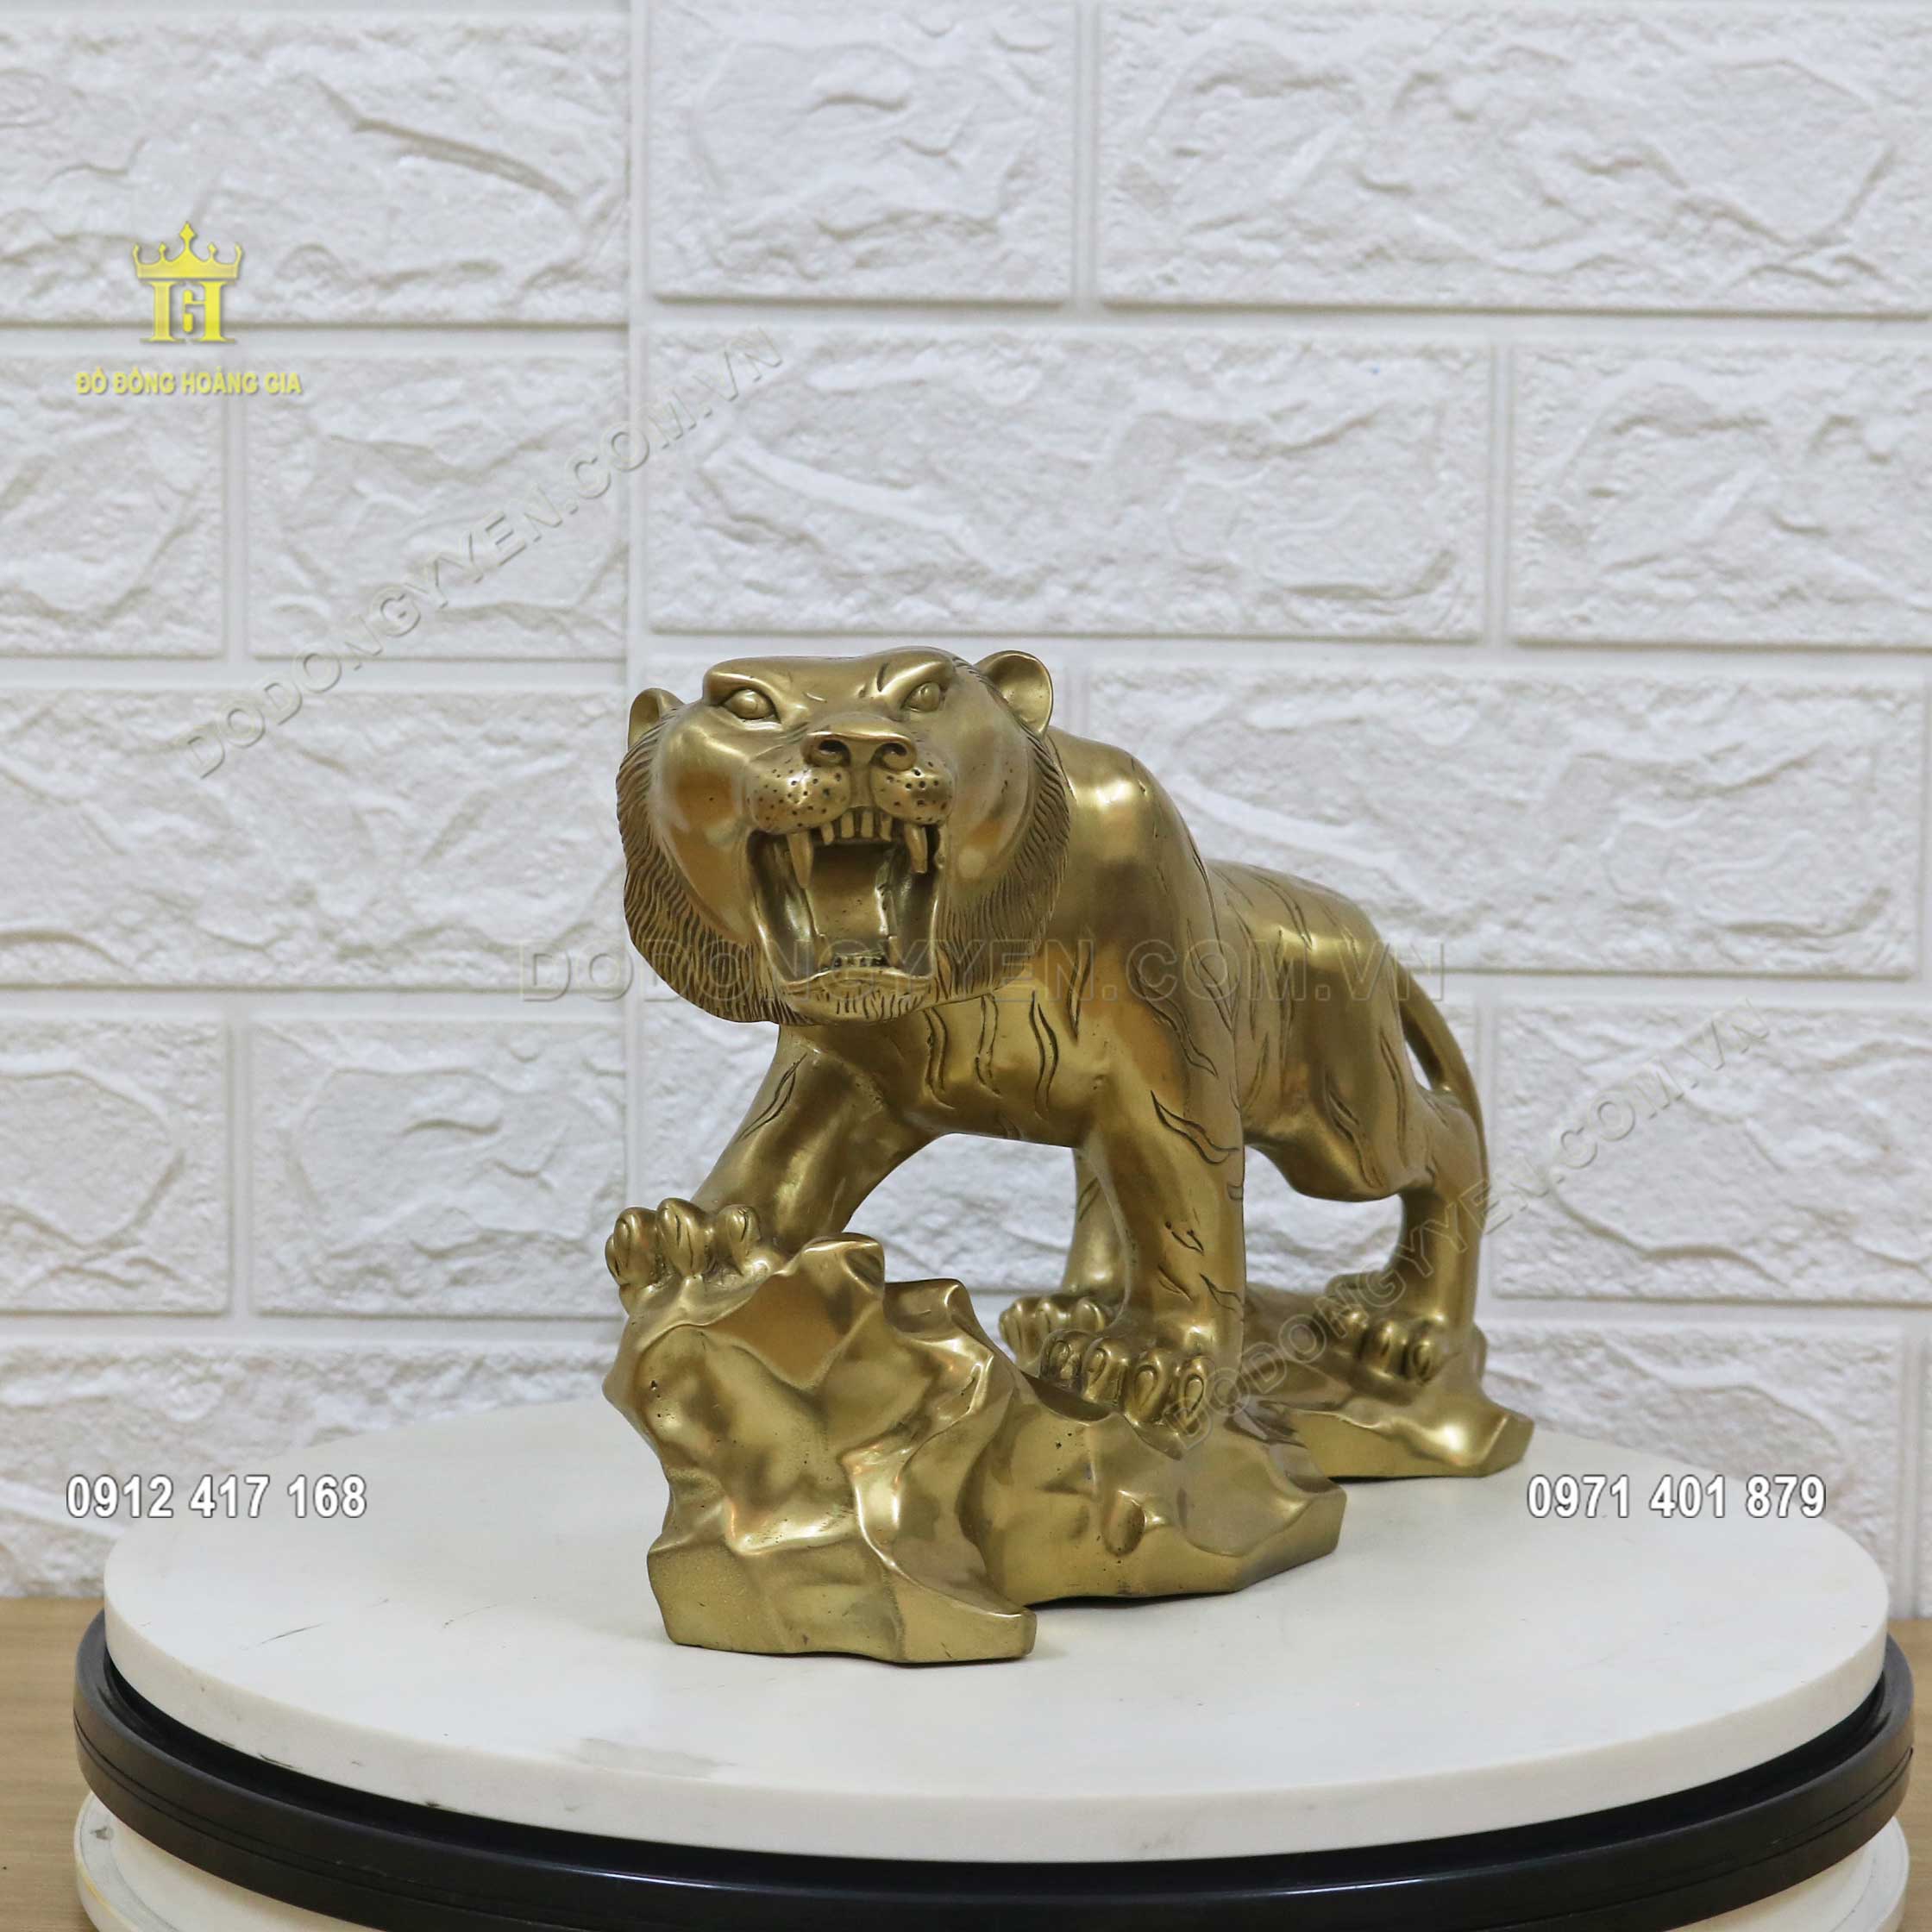 Pho tượng Hổ gầm được chế tác hoàn toàn bằng đồng vàng thanh khiết